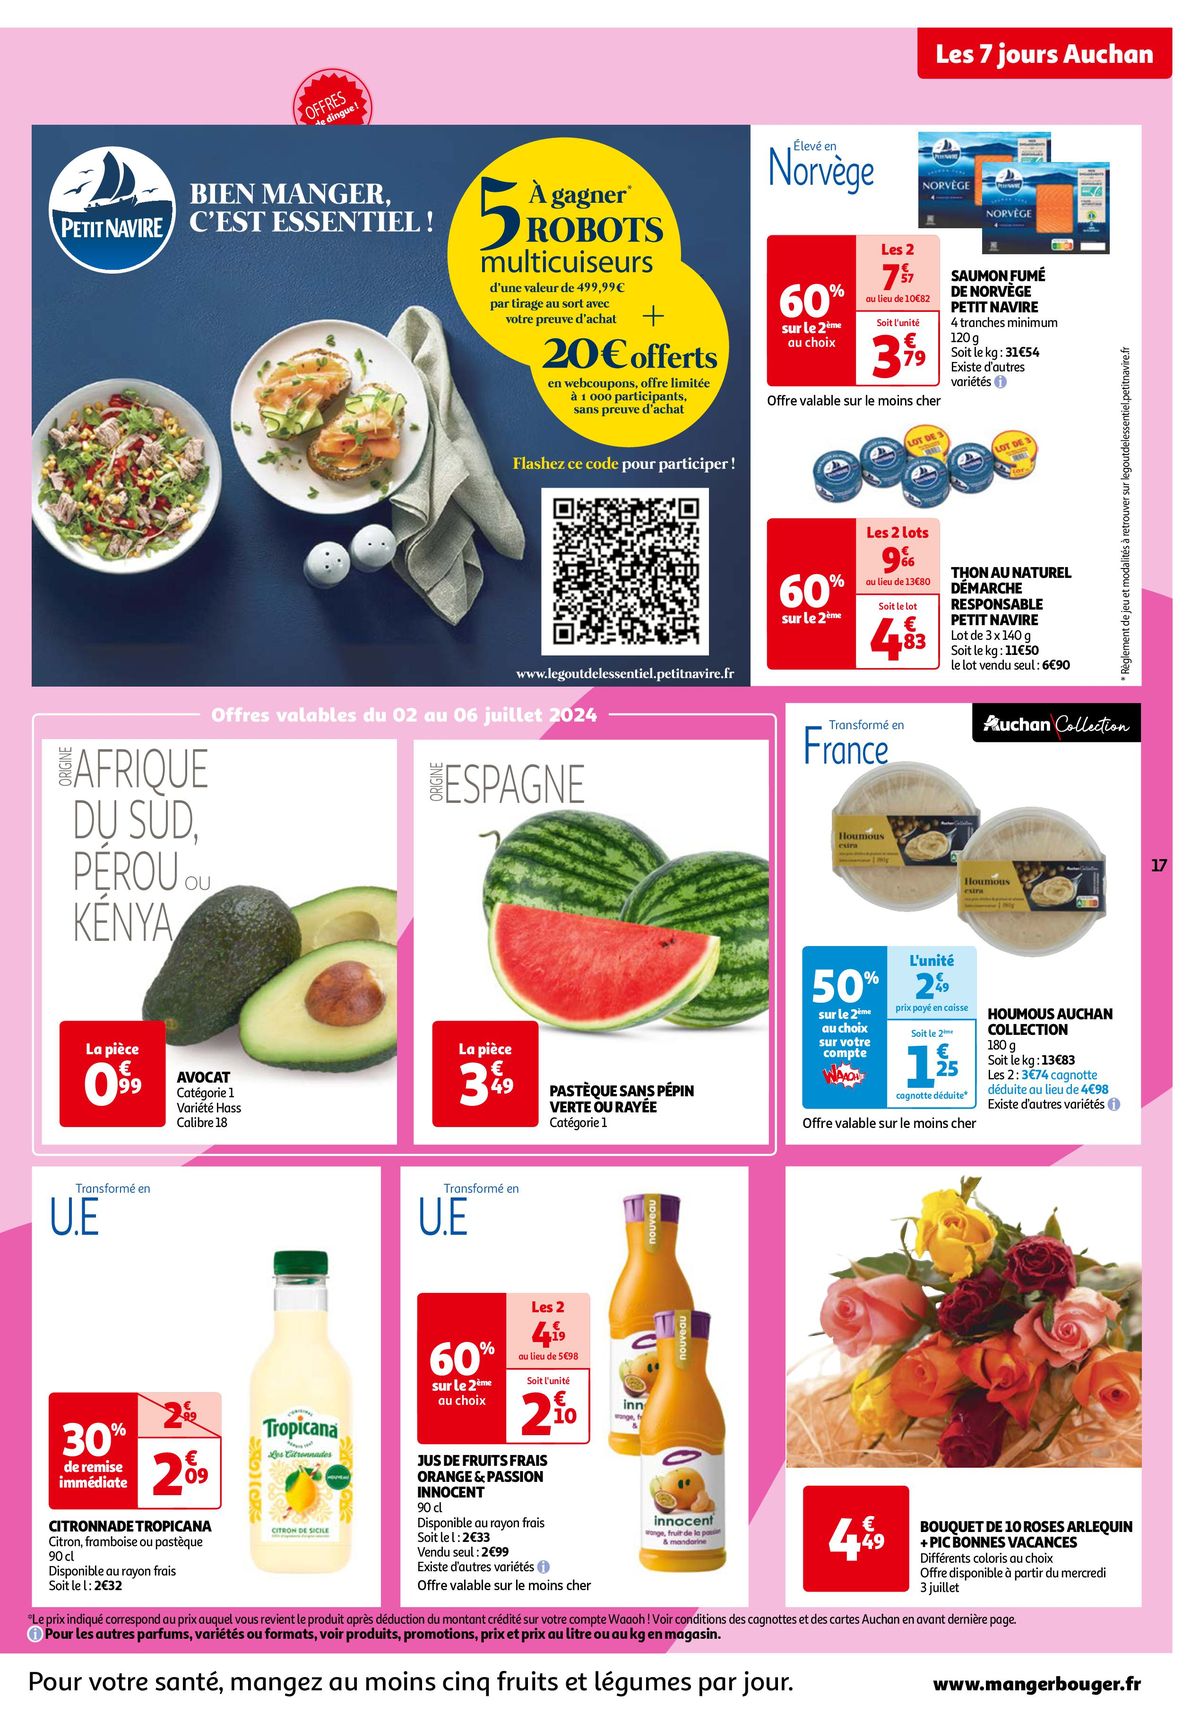 Catalogue Les 7 jours Auchan, c'est maintenant !, page 00017